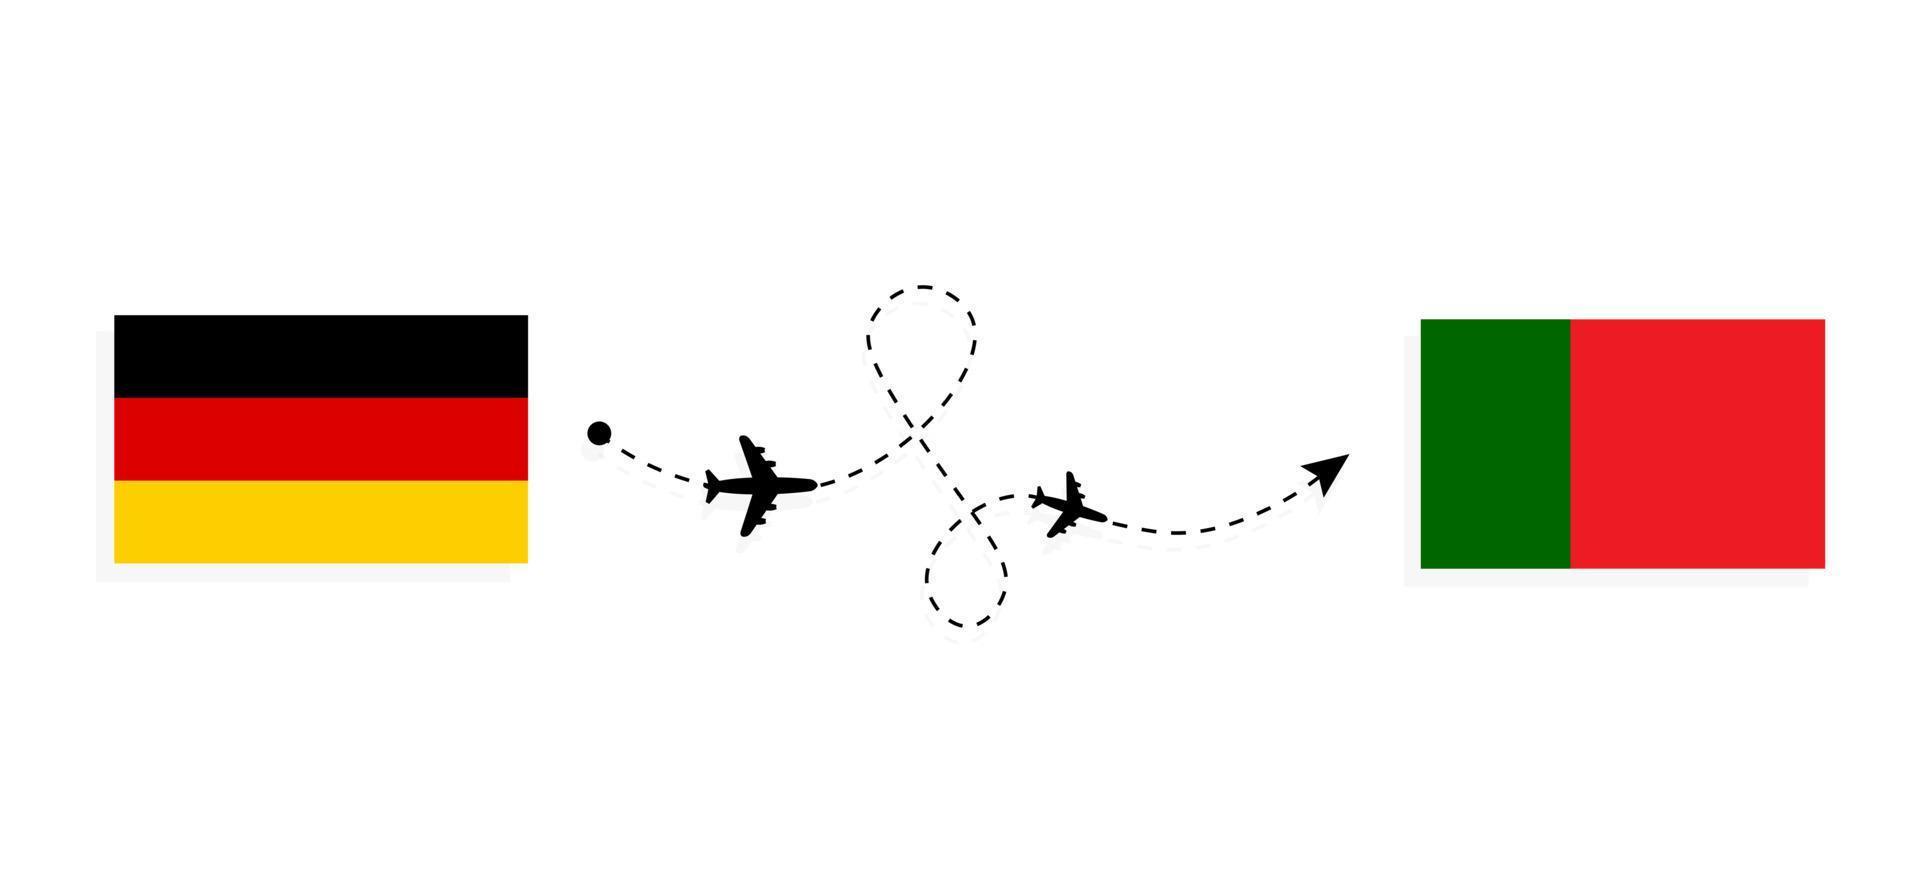 flyg och resor från Tyskland till Portugal med passagerarflygplan vektor